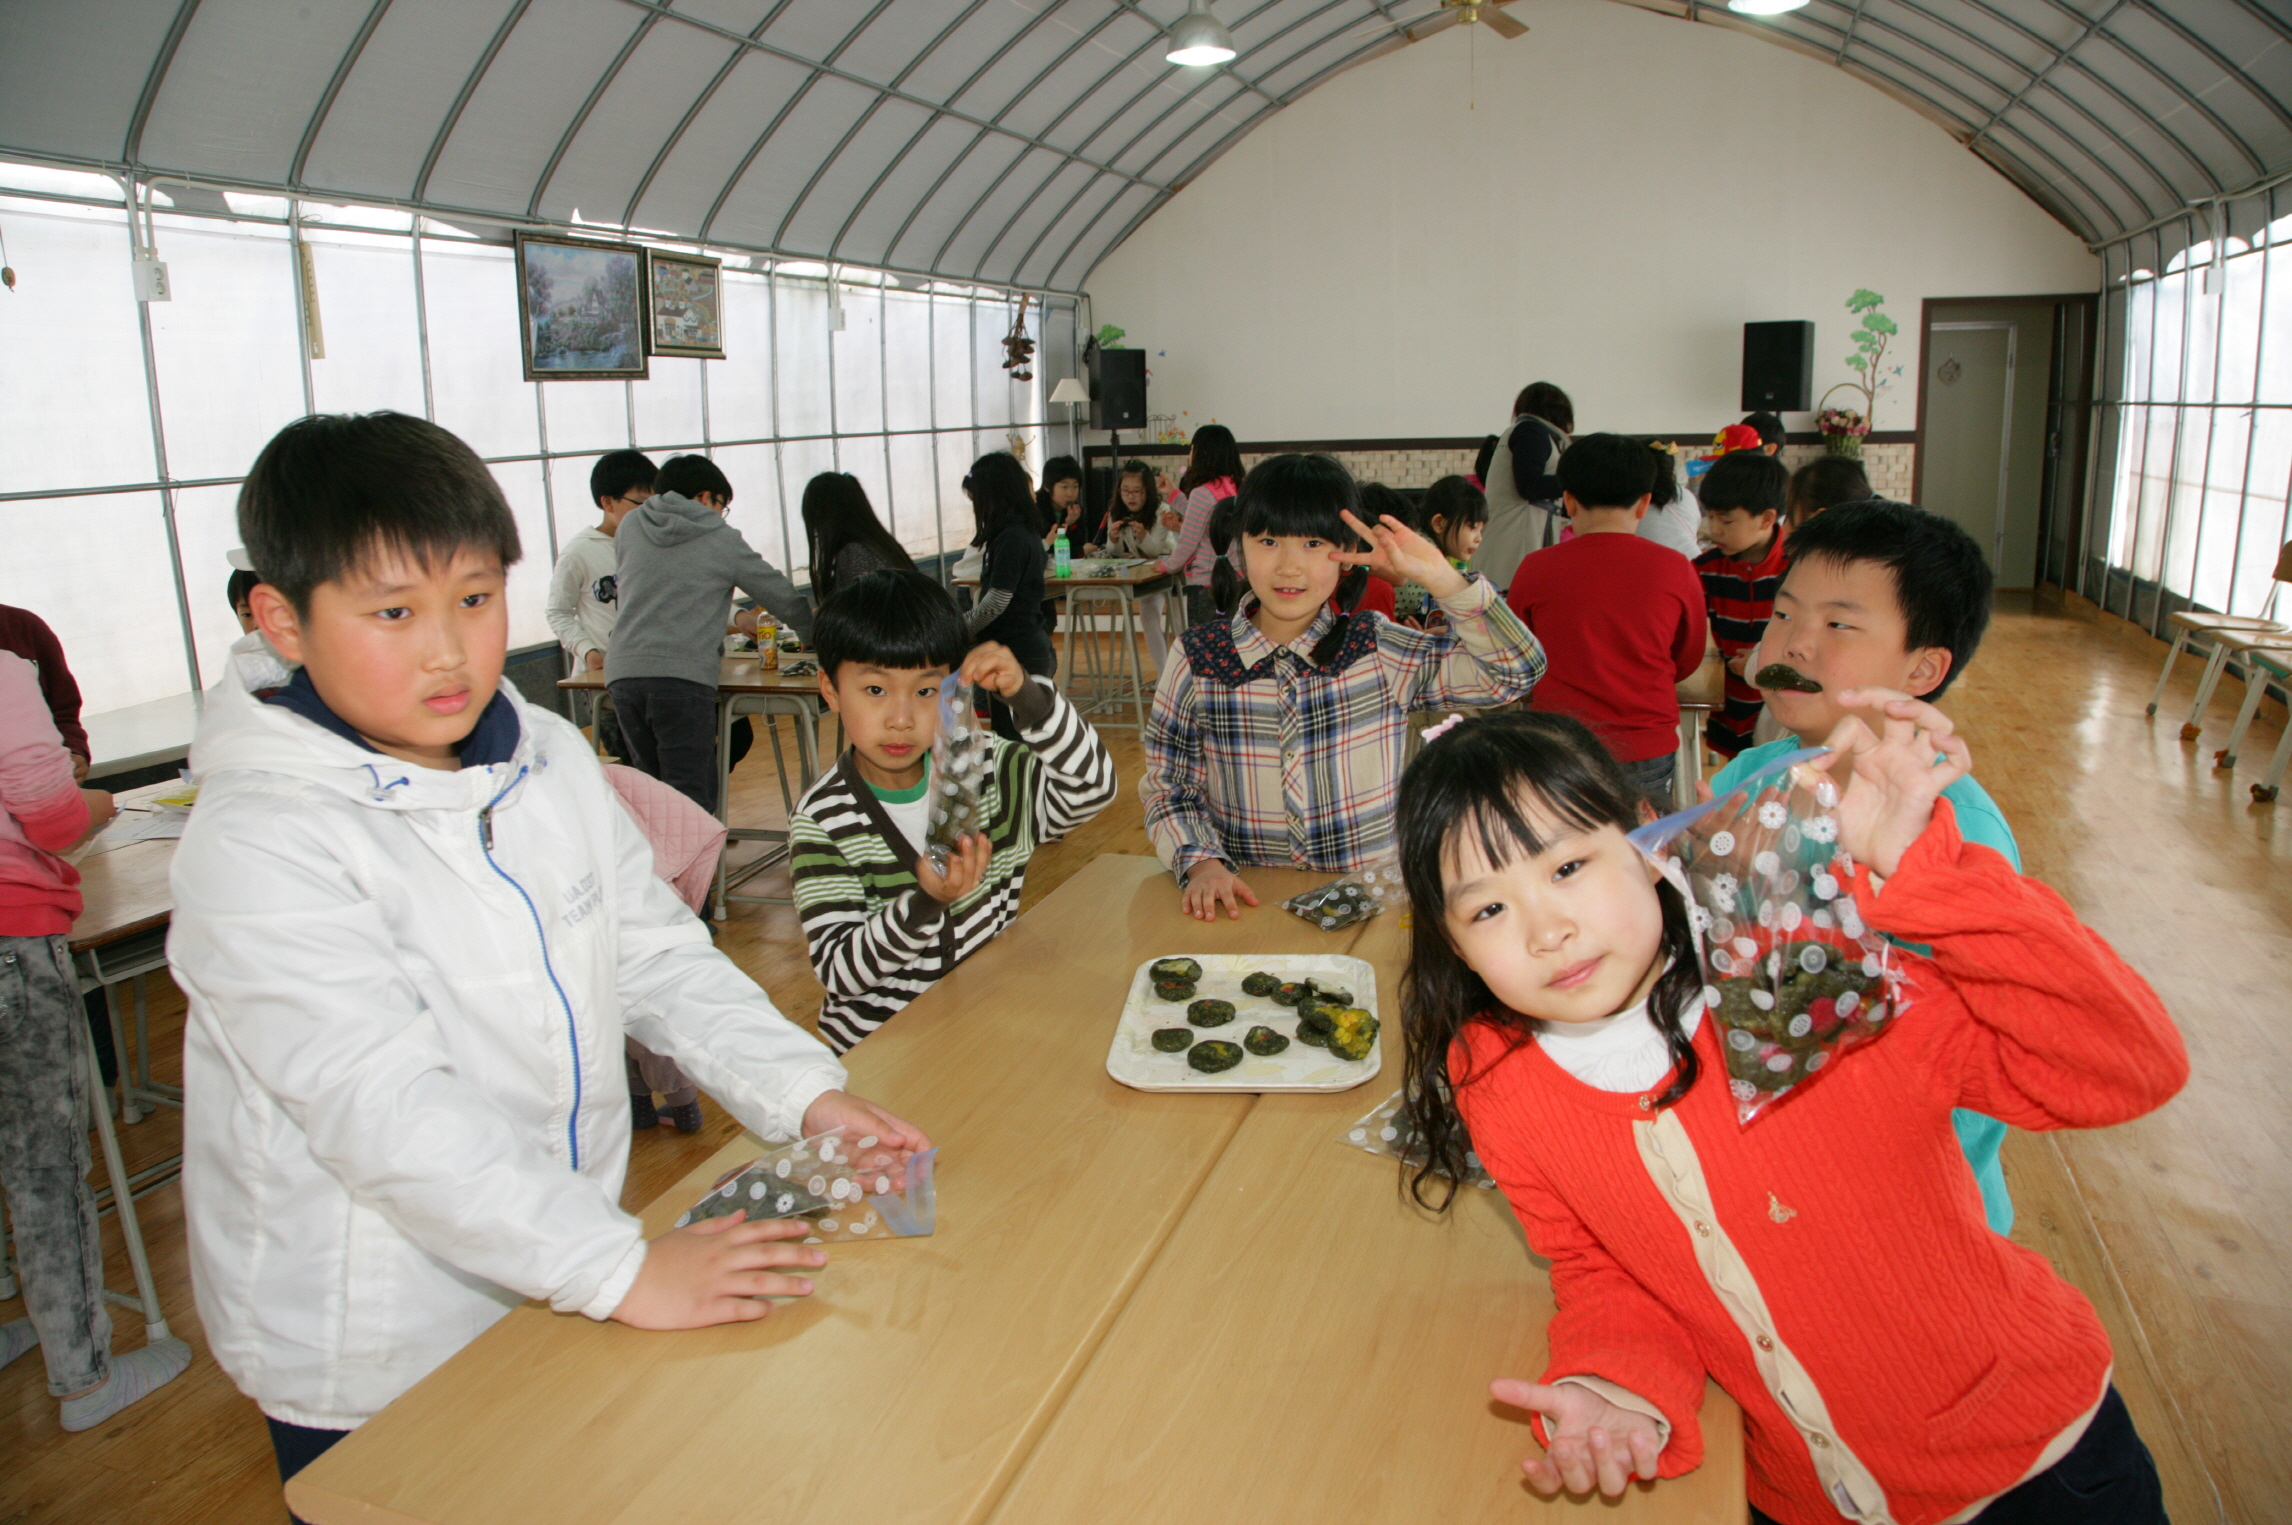 2013.4.9.동두천 신천초등학교 학생들의 농촌체험현장입니다. 이미지